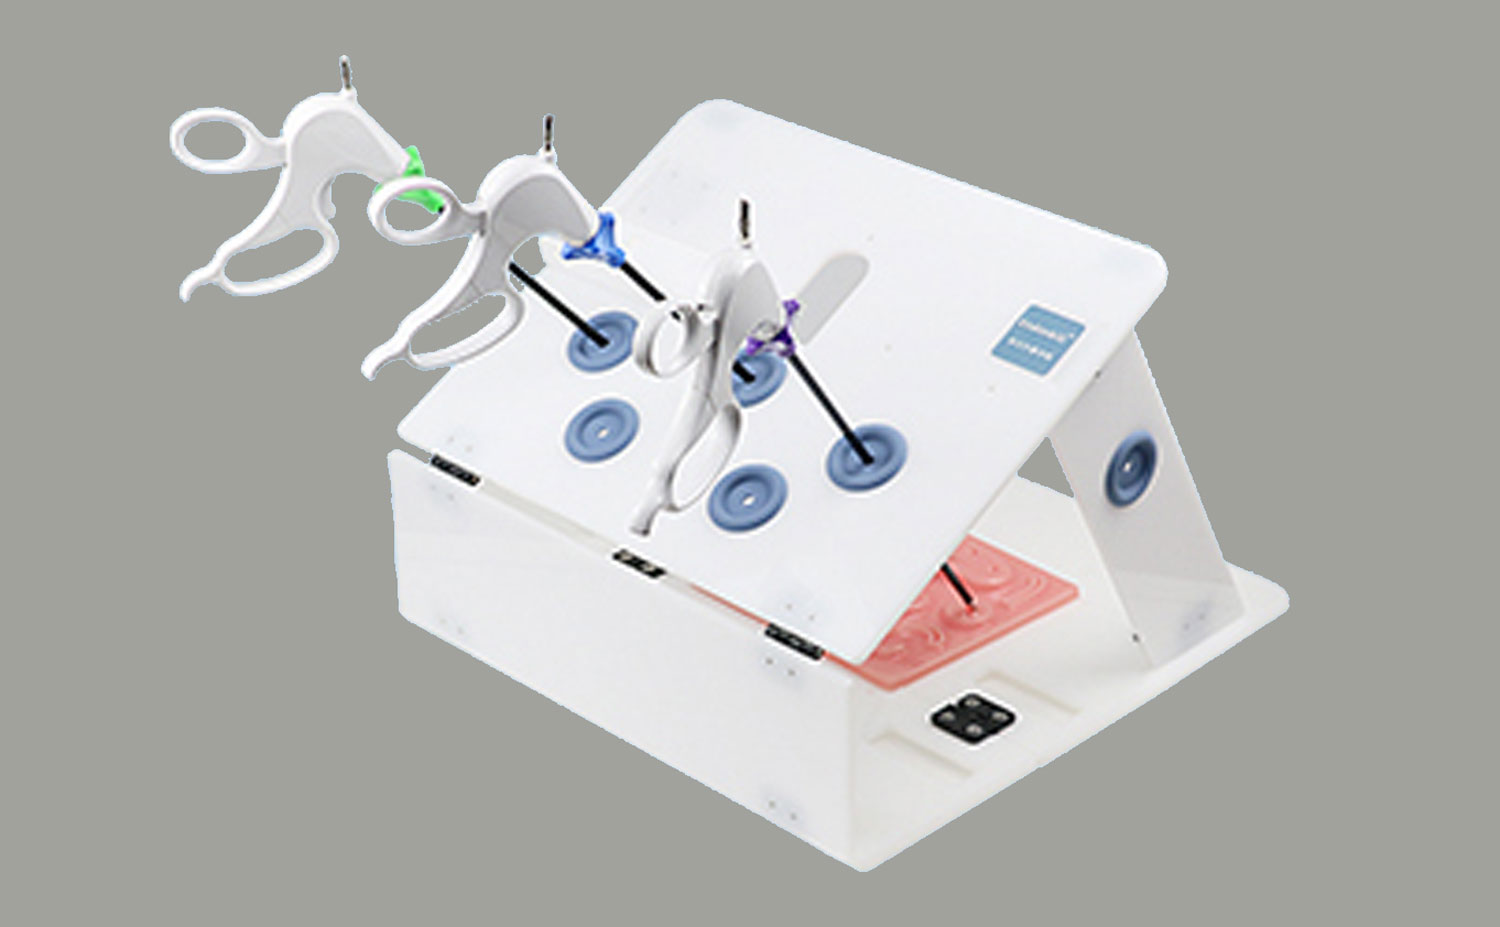 Per què triar la caixa de formació laparoscòpica de Smailmedical